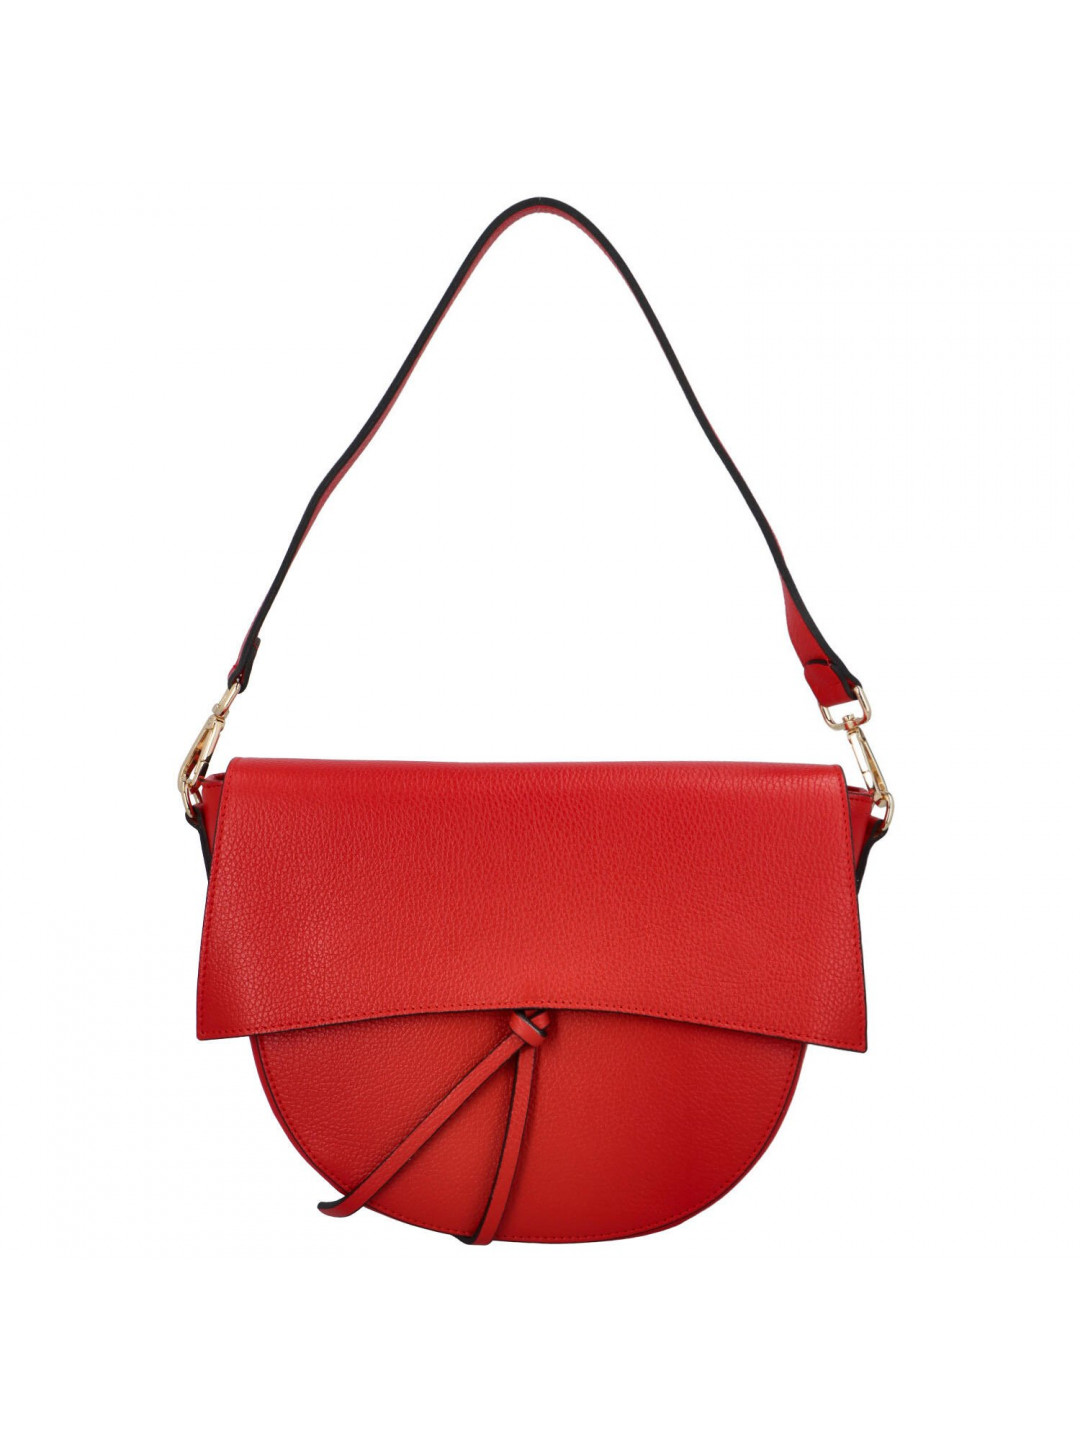 Dámská luxusní kožená malá kabelka Chiara červená